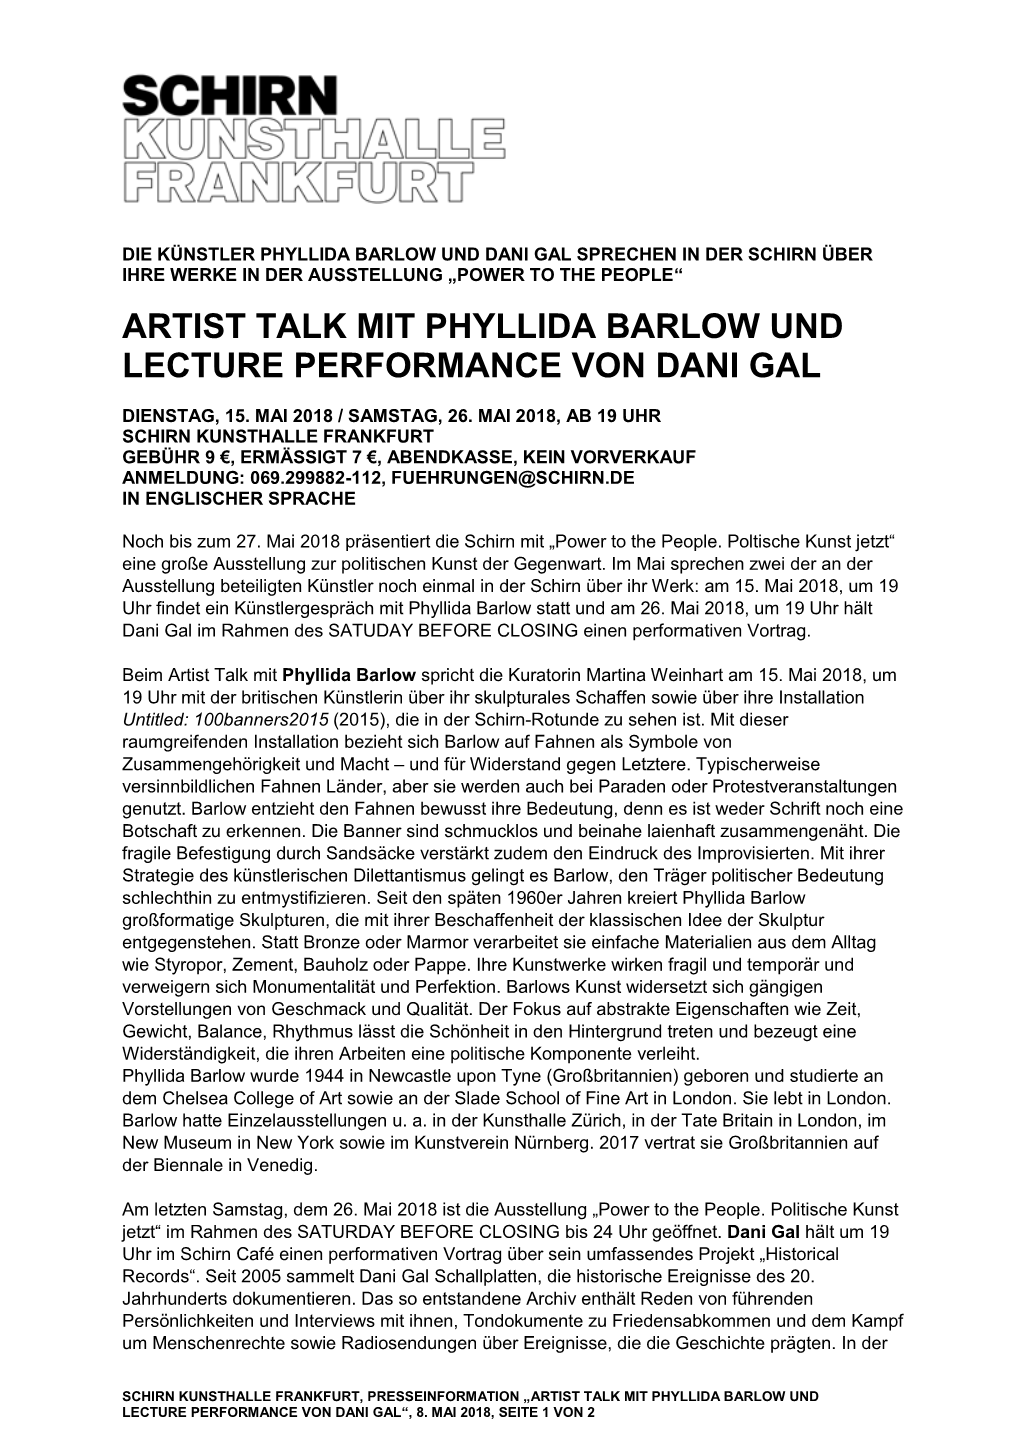 Artist Talk Mit Phyllida Barlow Und Lecture Performance Von Dani Gal